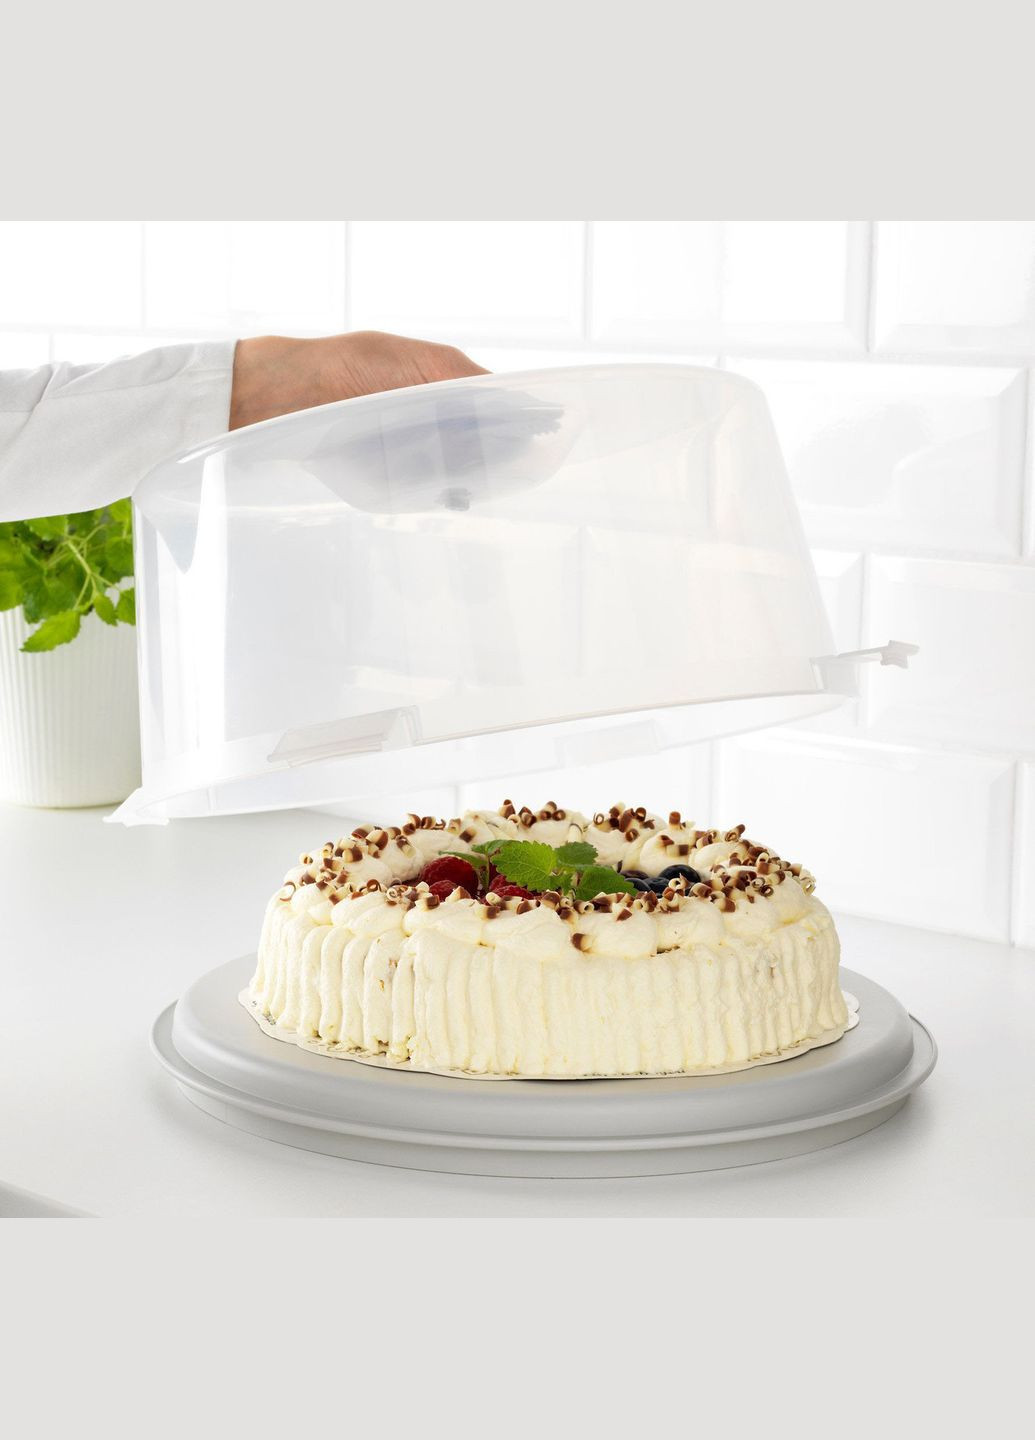 Контейнер для торта, прозрачный,, ИКЕА,, IKEA (286379828)